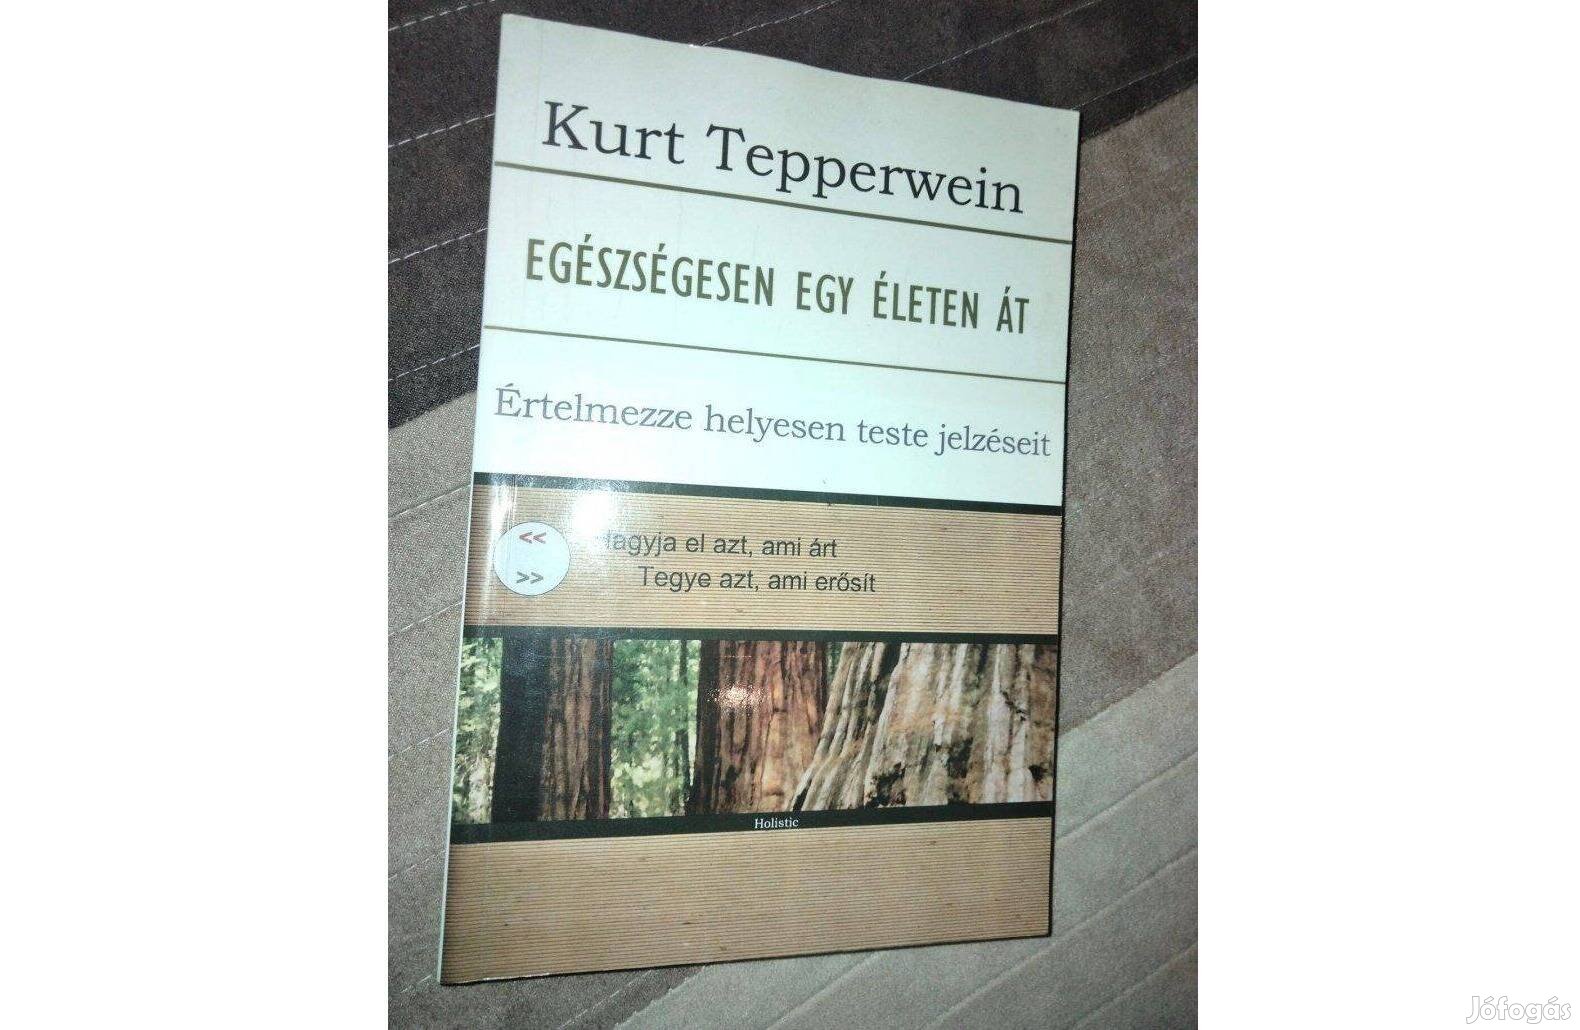 Kurt Tepperwein: Egészségesen egy életen át